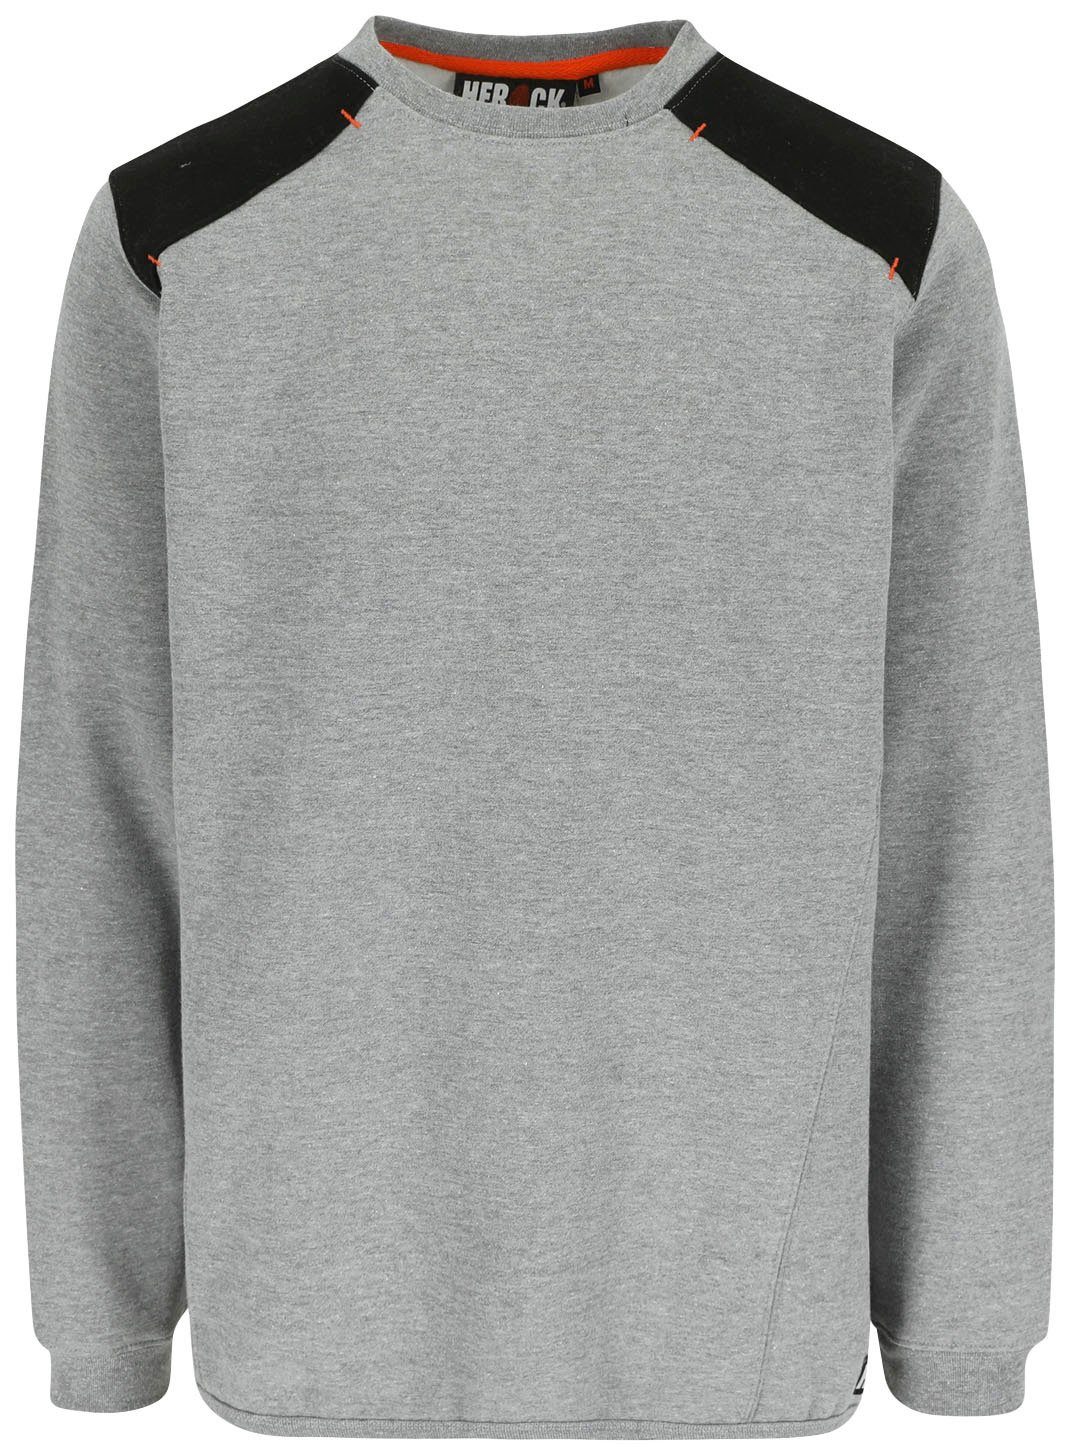 Rippstrick Sweater Rückenteil grau - Artemis Herock weiches Tragegefühl Rundhalspullover - Langes Kragen